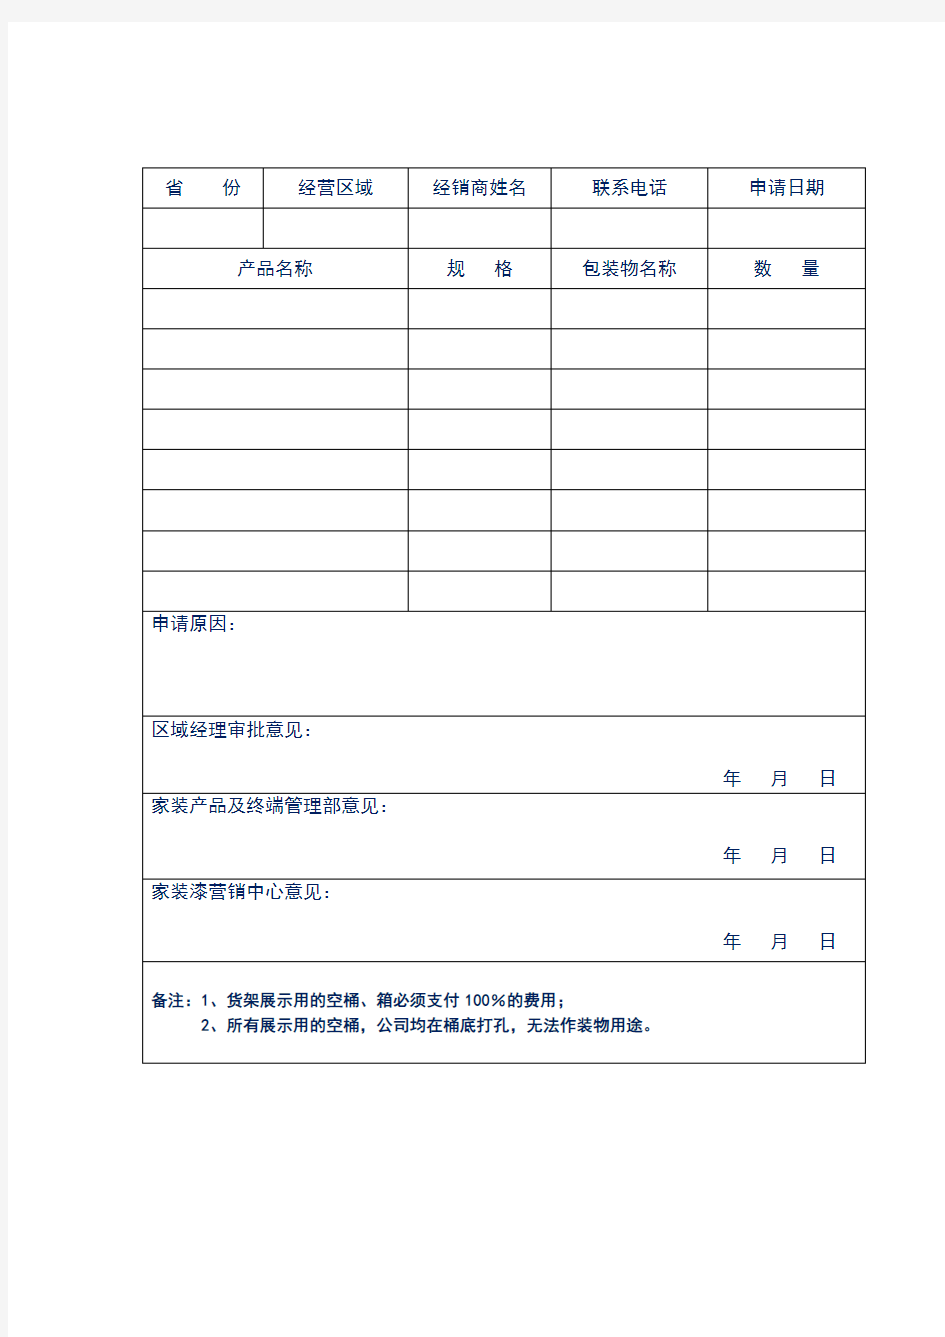 公司产品订货单与申请单(样表)